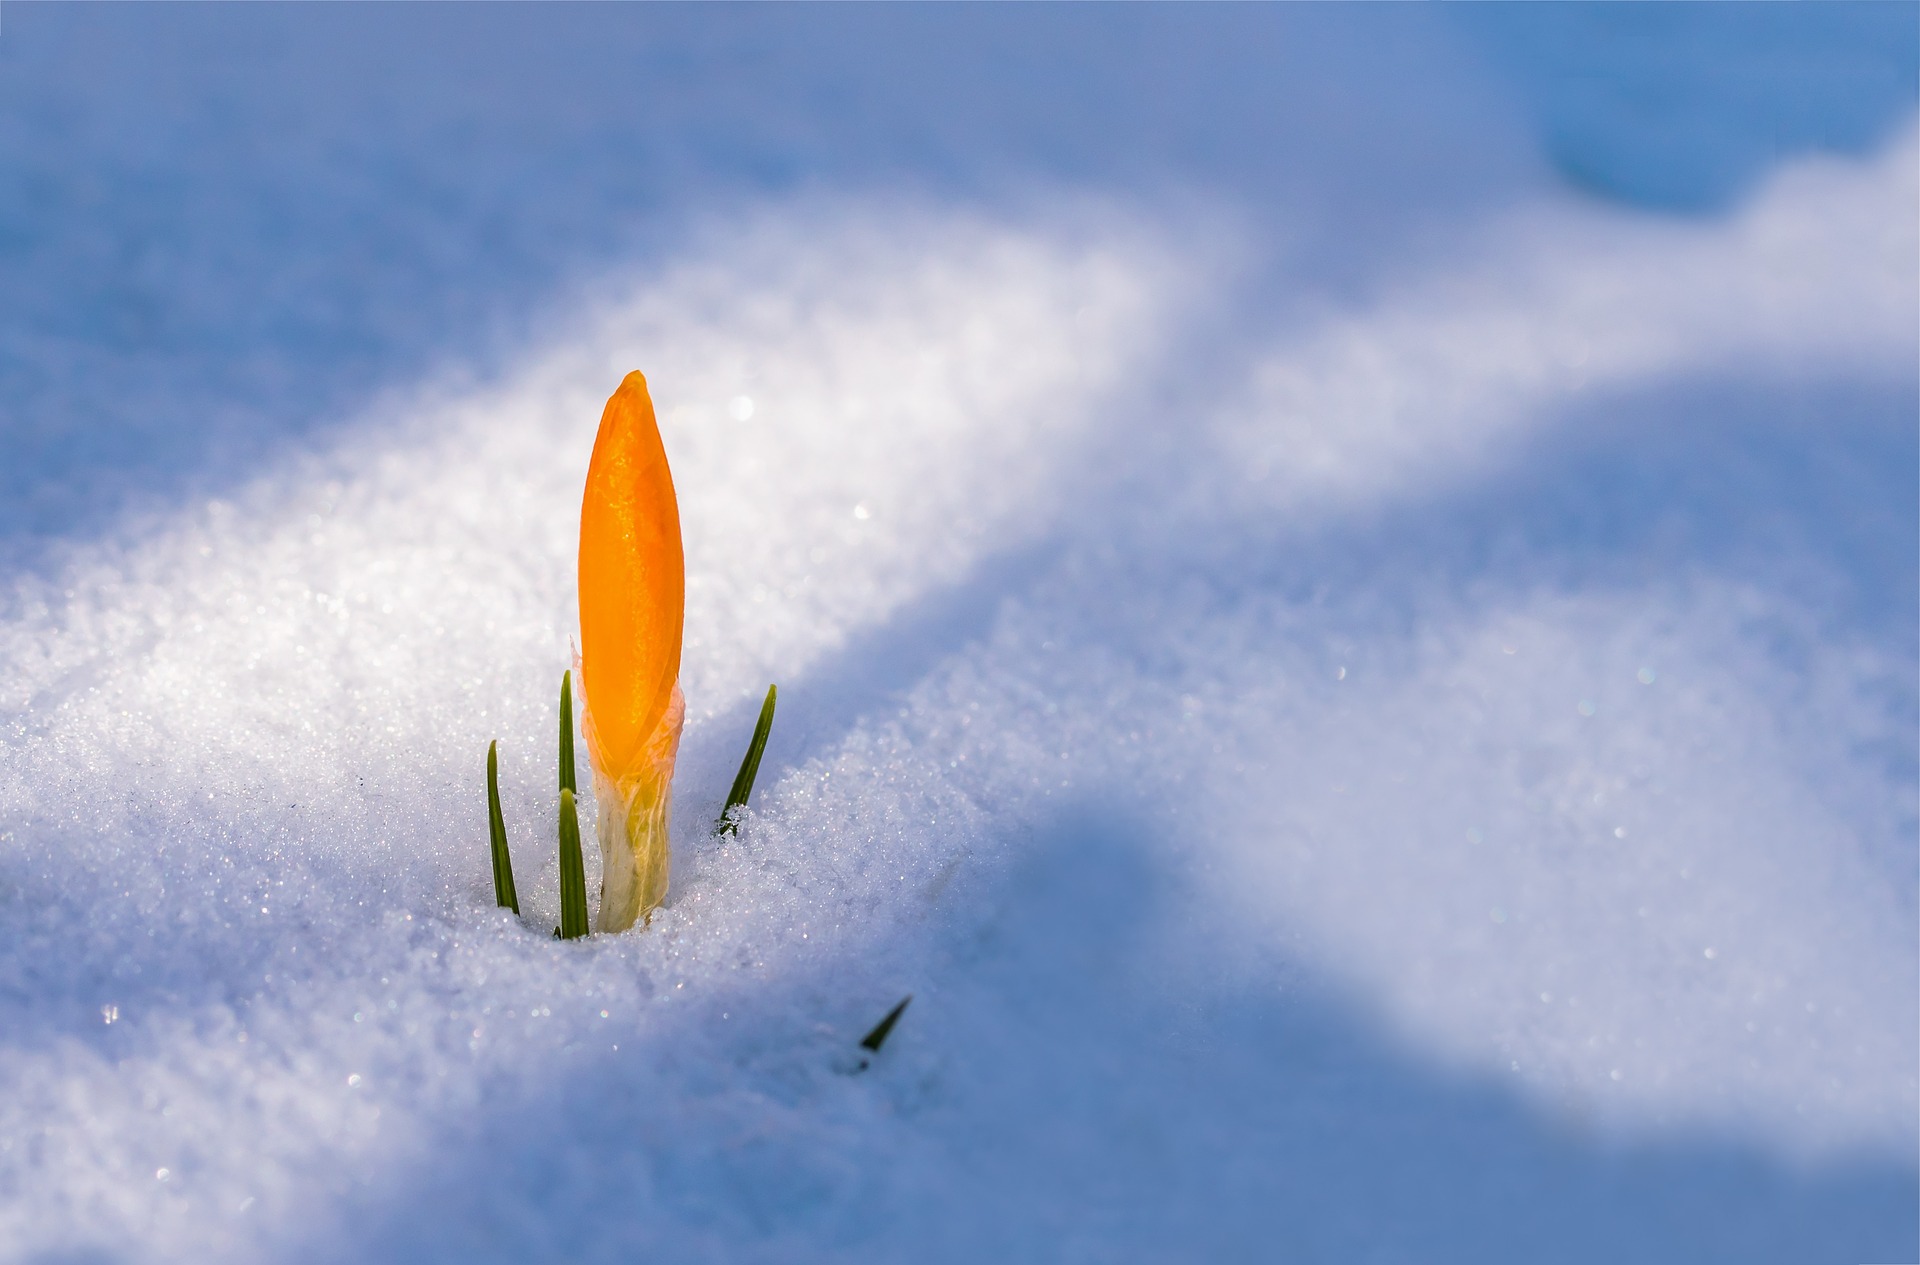 La neige protège les jeunes plantes du gel grâce à son effet isolant. © Myriams-Fotos, Pixabay